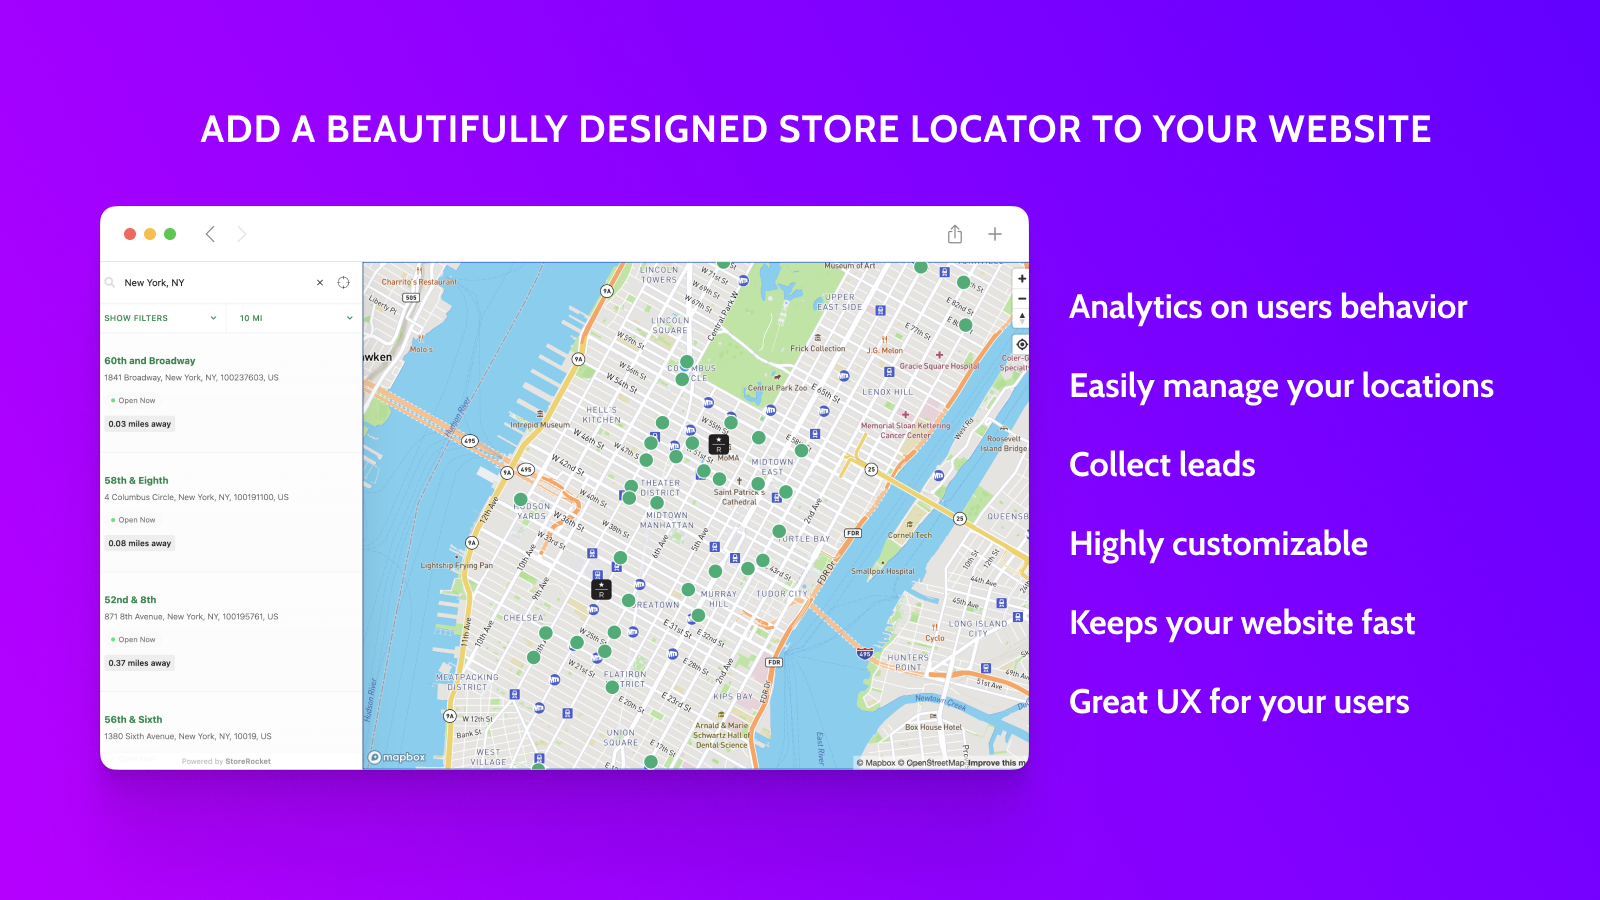 Lägg till en vackert designad butikslokalisator på din webbplats!